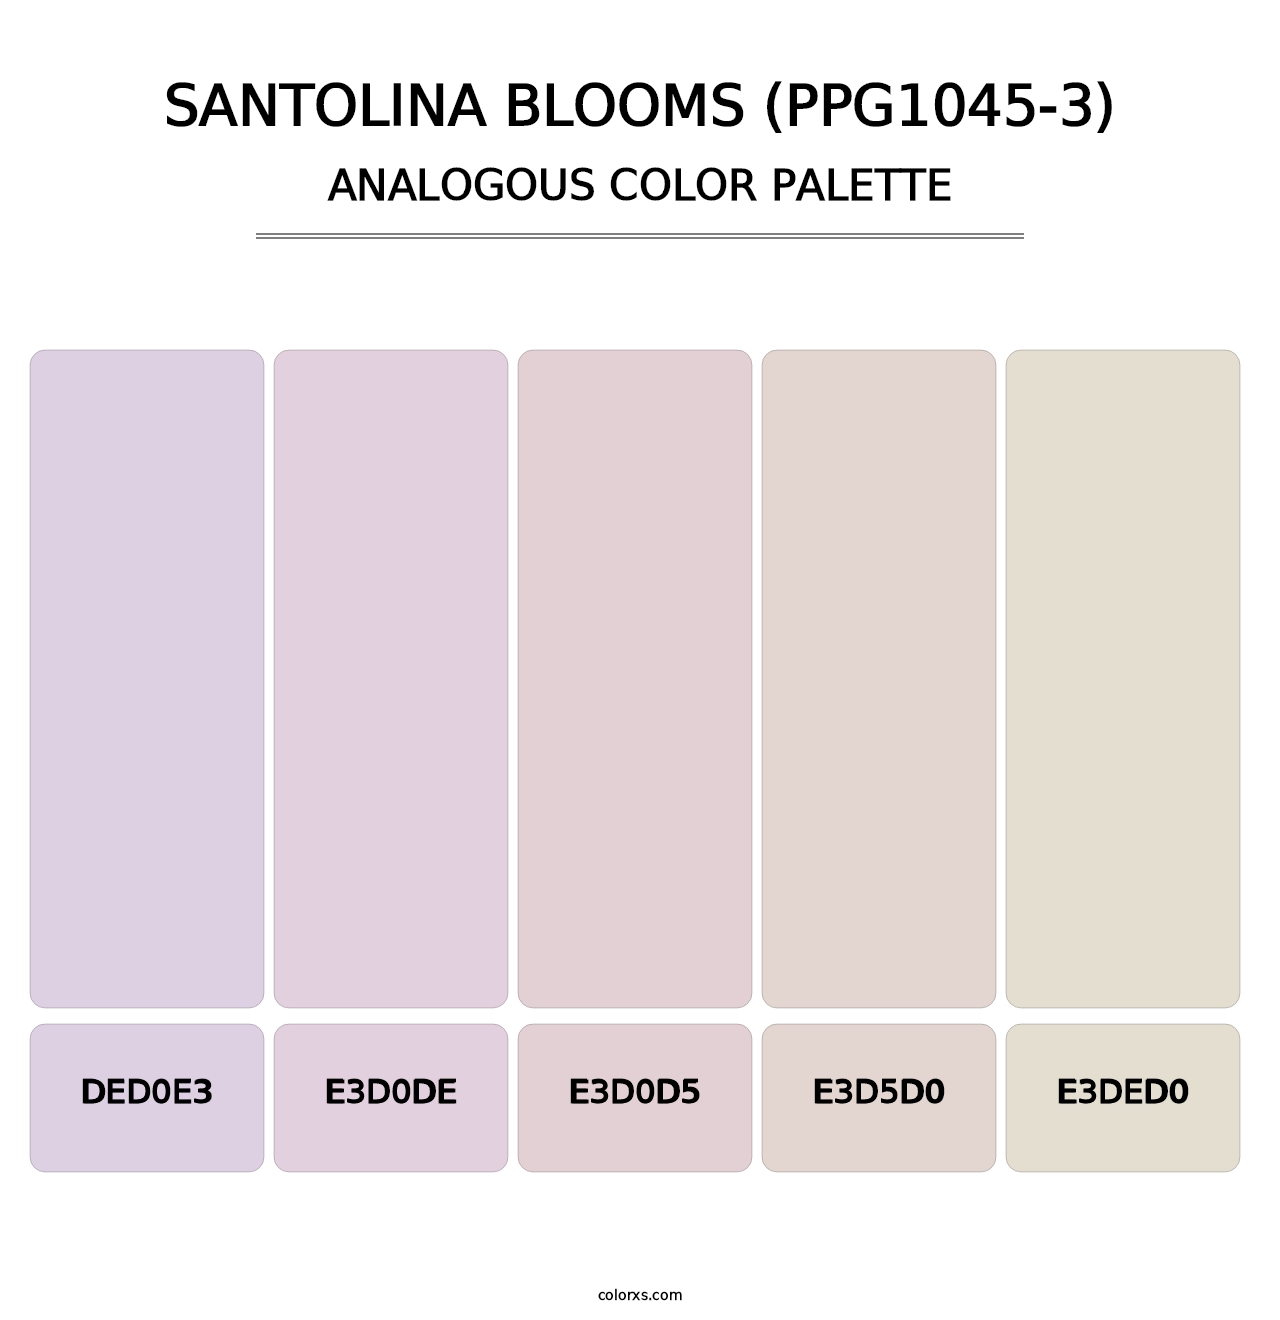 Santolina Blooms (PPG1045-3) - Analogous Color Palette